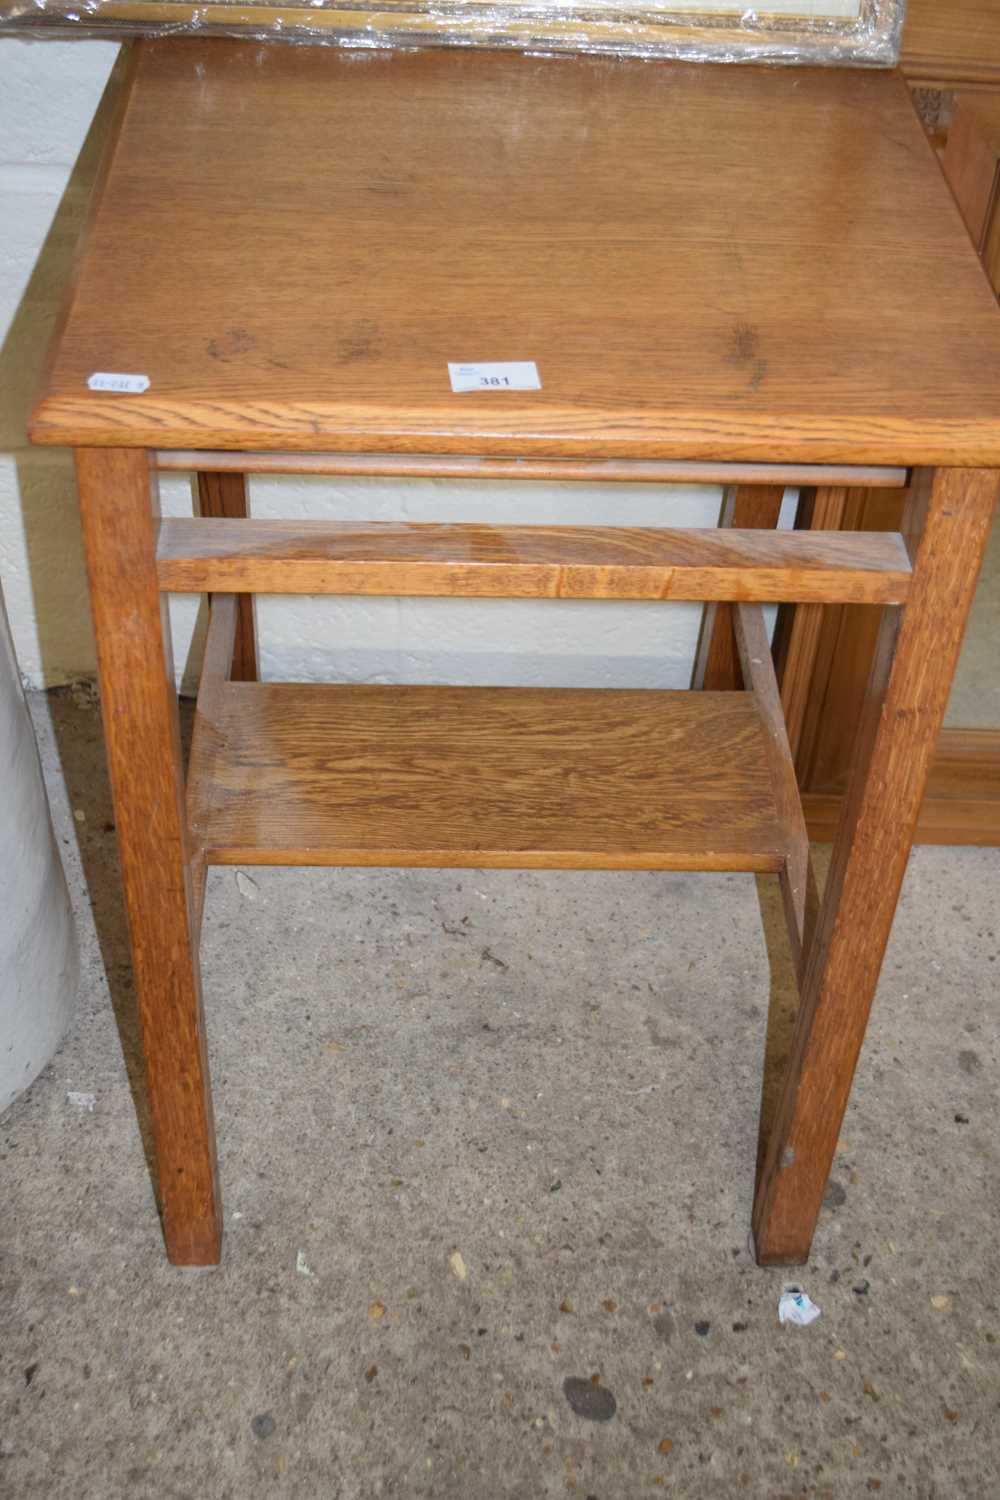 Lot 381 - Small oak side table, 45cm wide